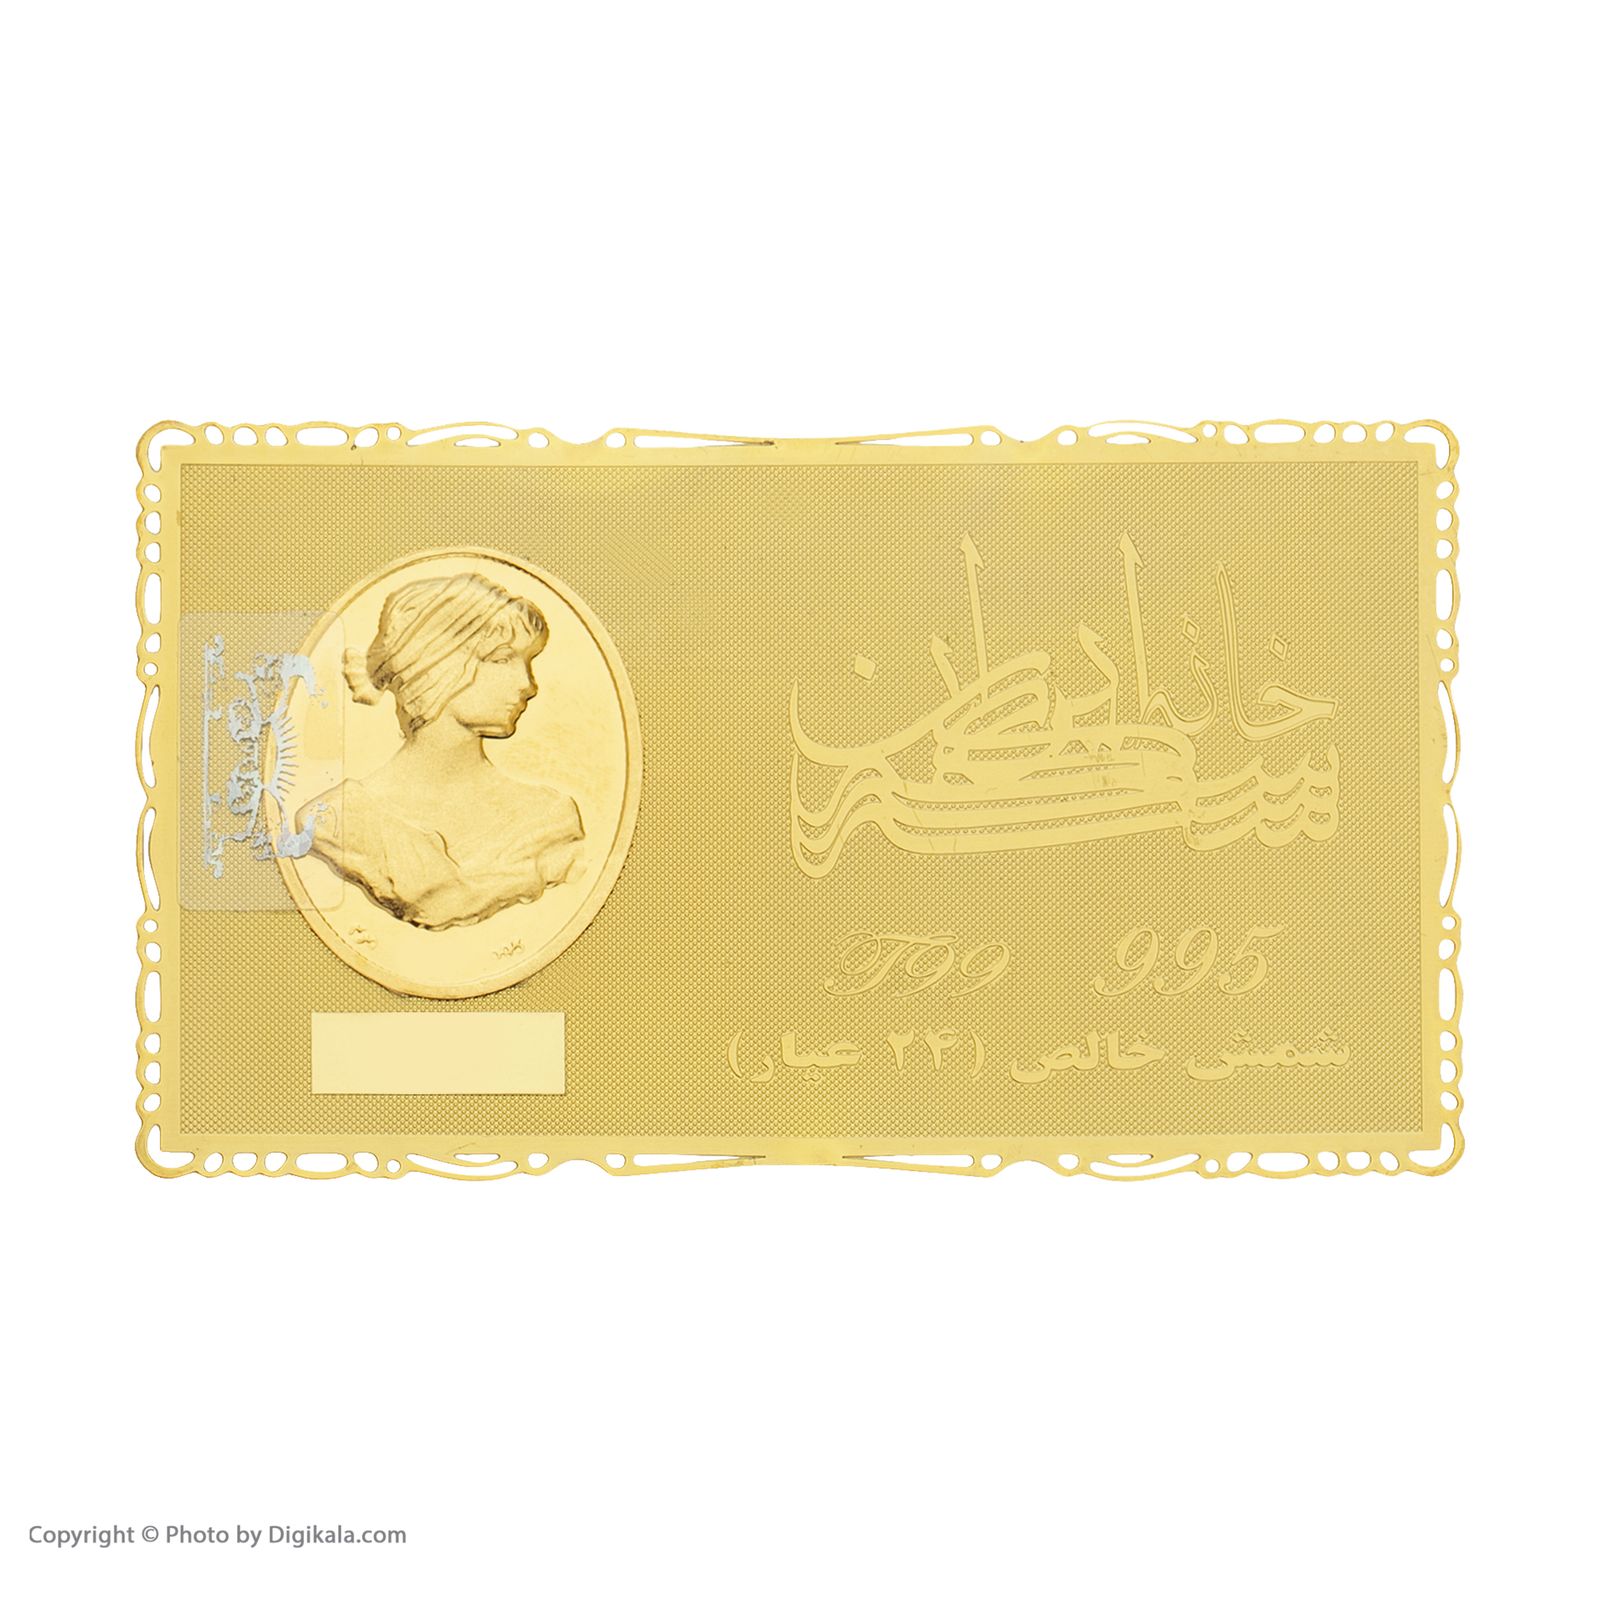 طلا گرمی 24 عیار خانه سکه ایران کد 007 -  - 2